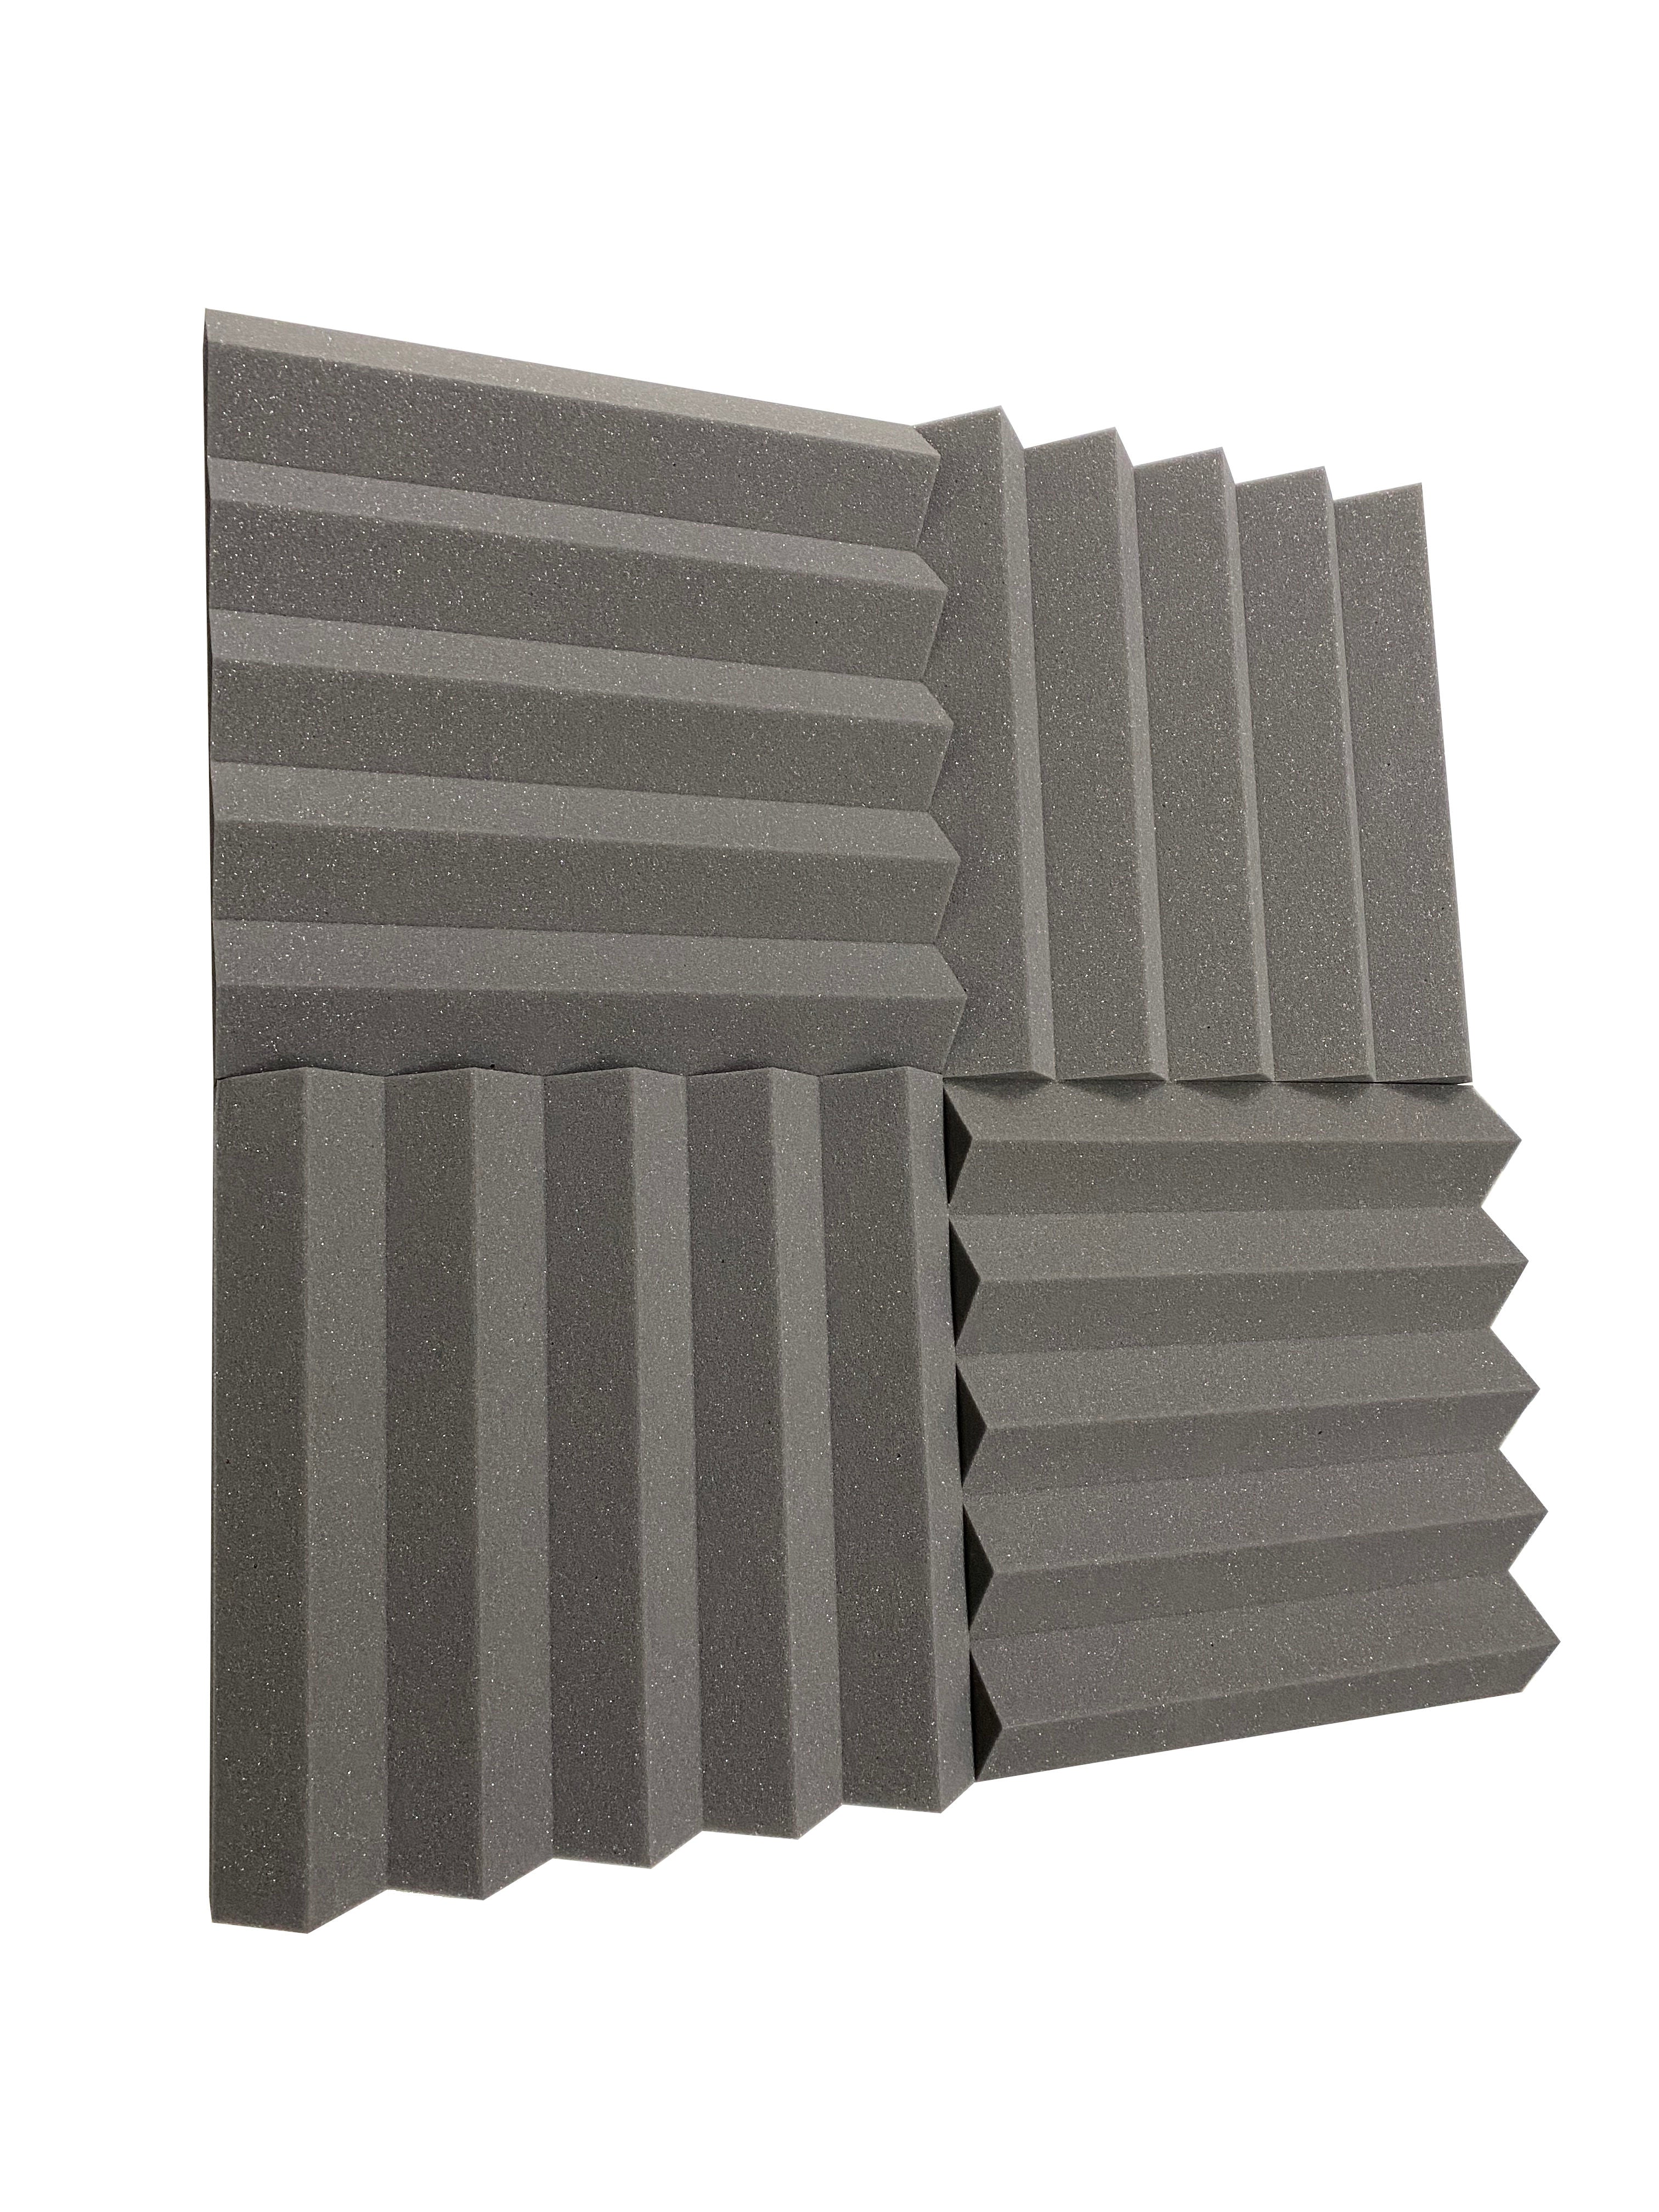 Wedge PRO 15" Acoustic Studio Foam Tile Pack - 24 Tiles, 3.48qm Coverage